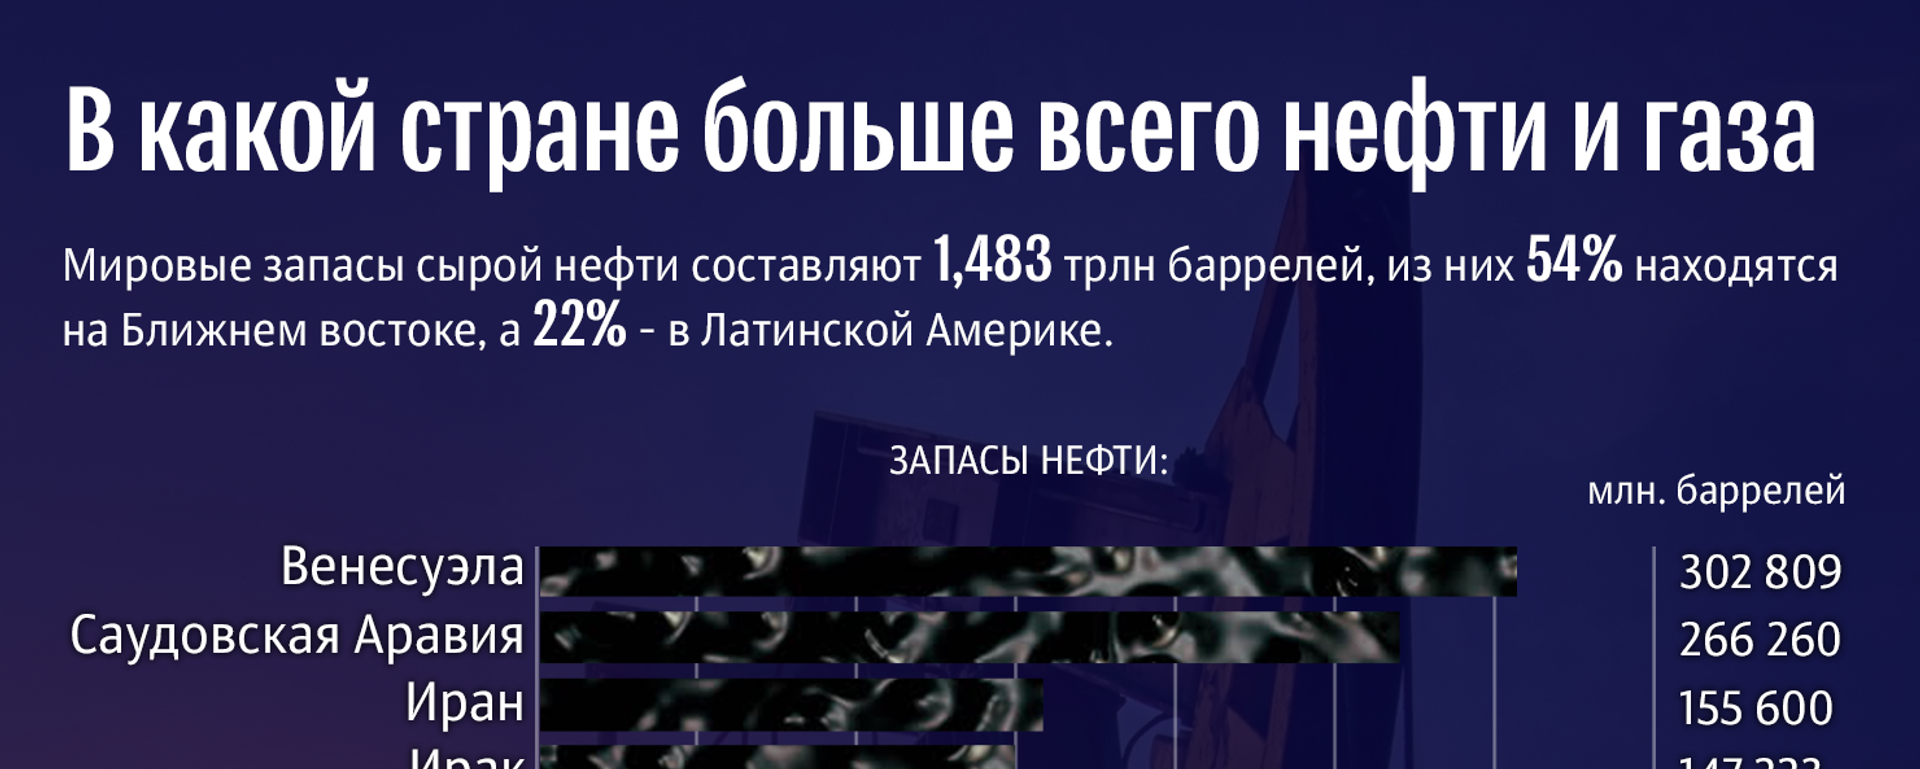 В какой стране больше всего нефти и газа - Sputnik Азербайджан, 1920, 03.12.2018